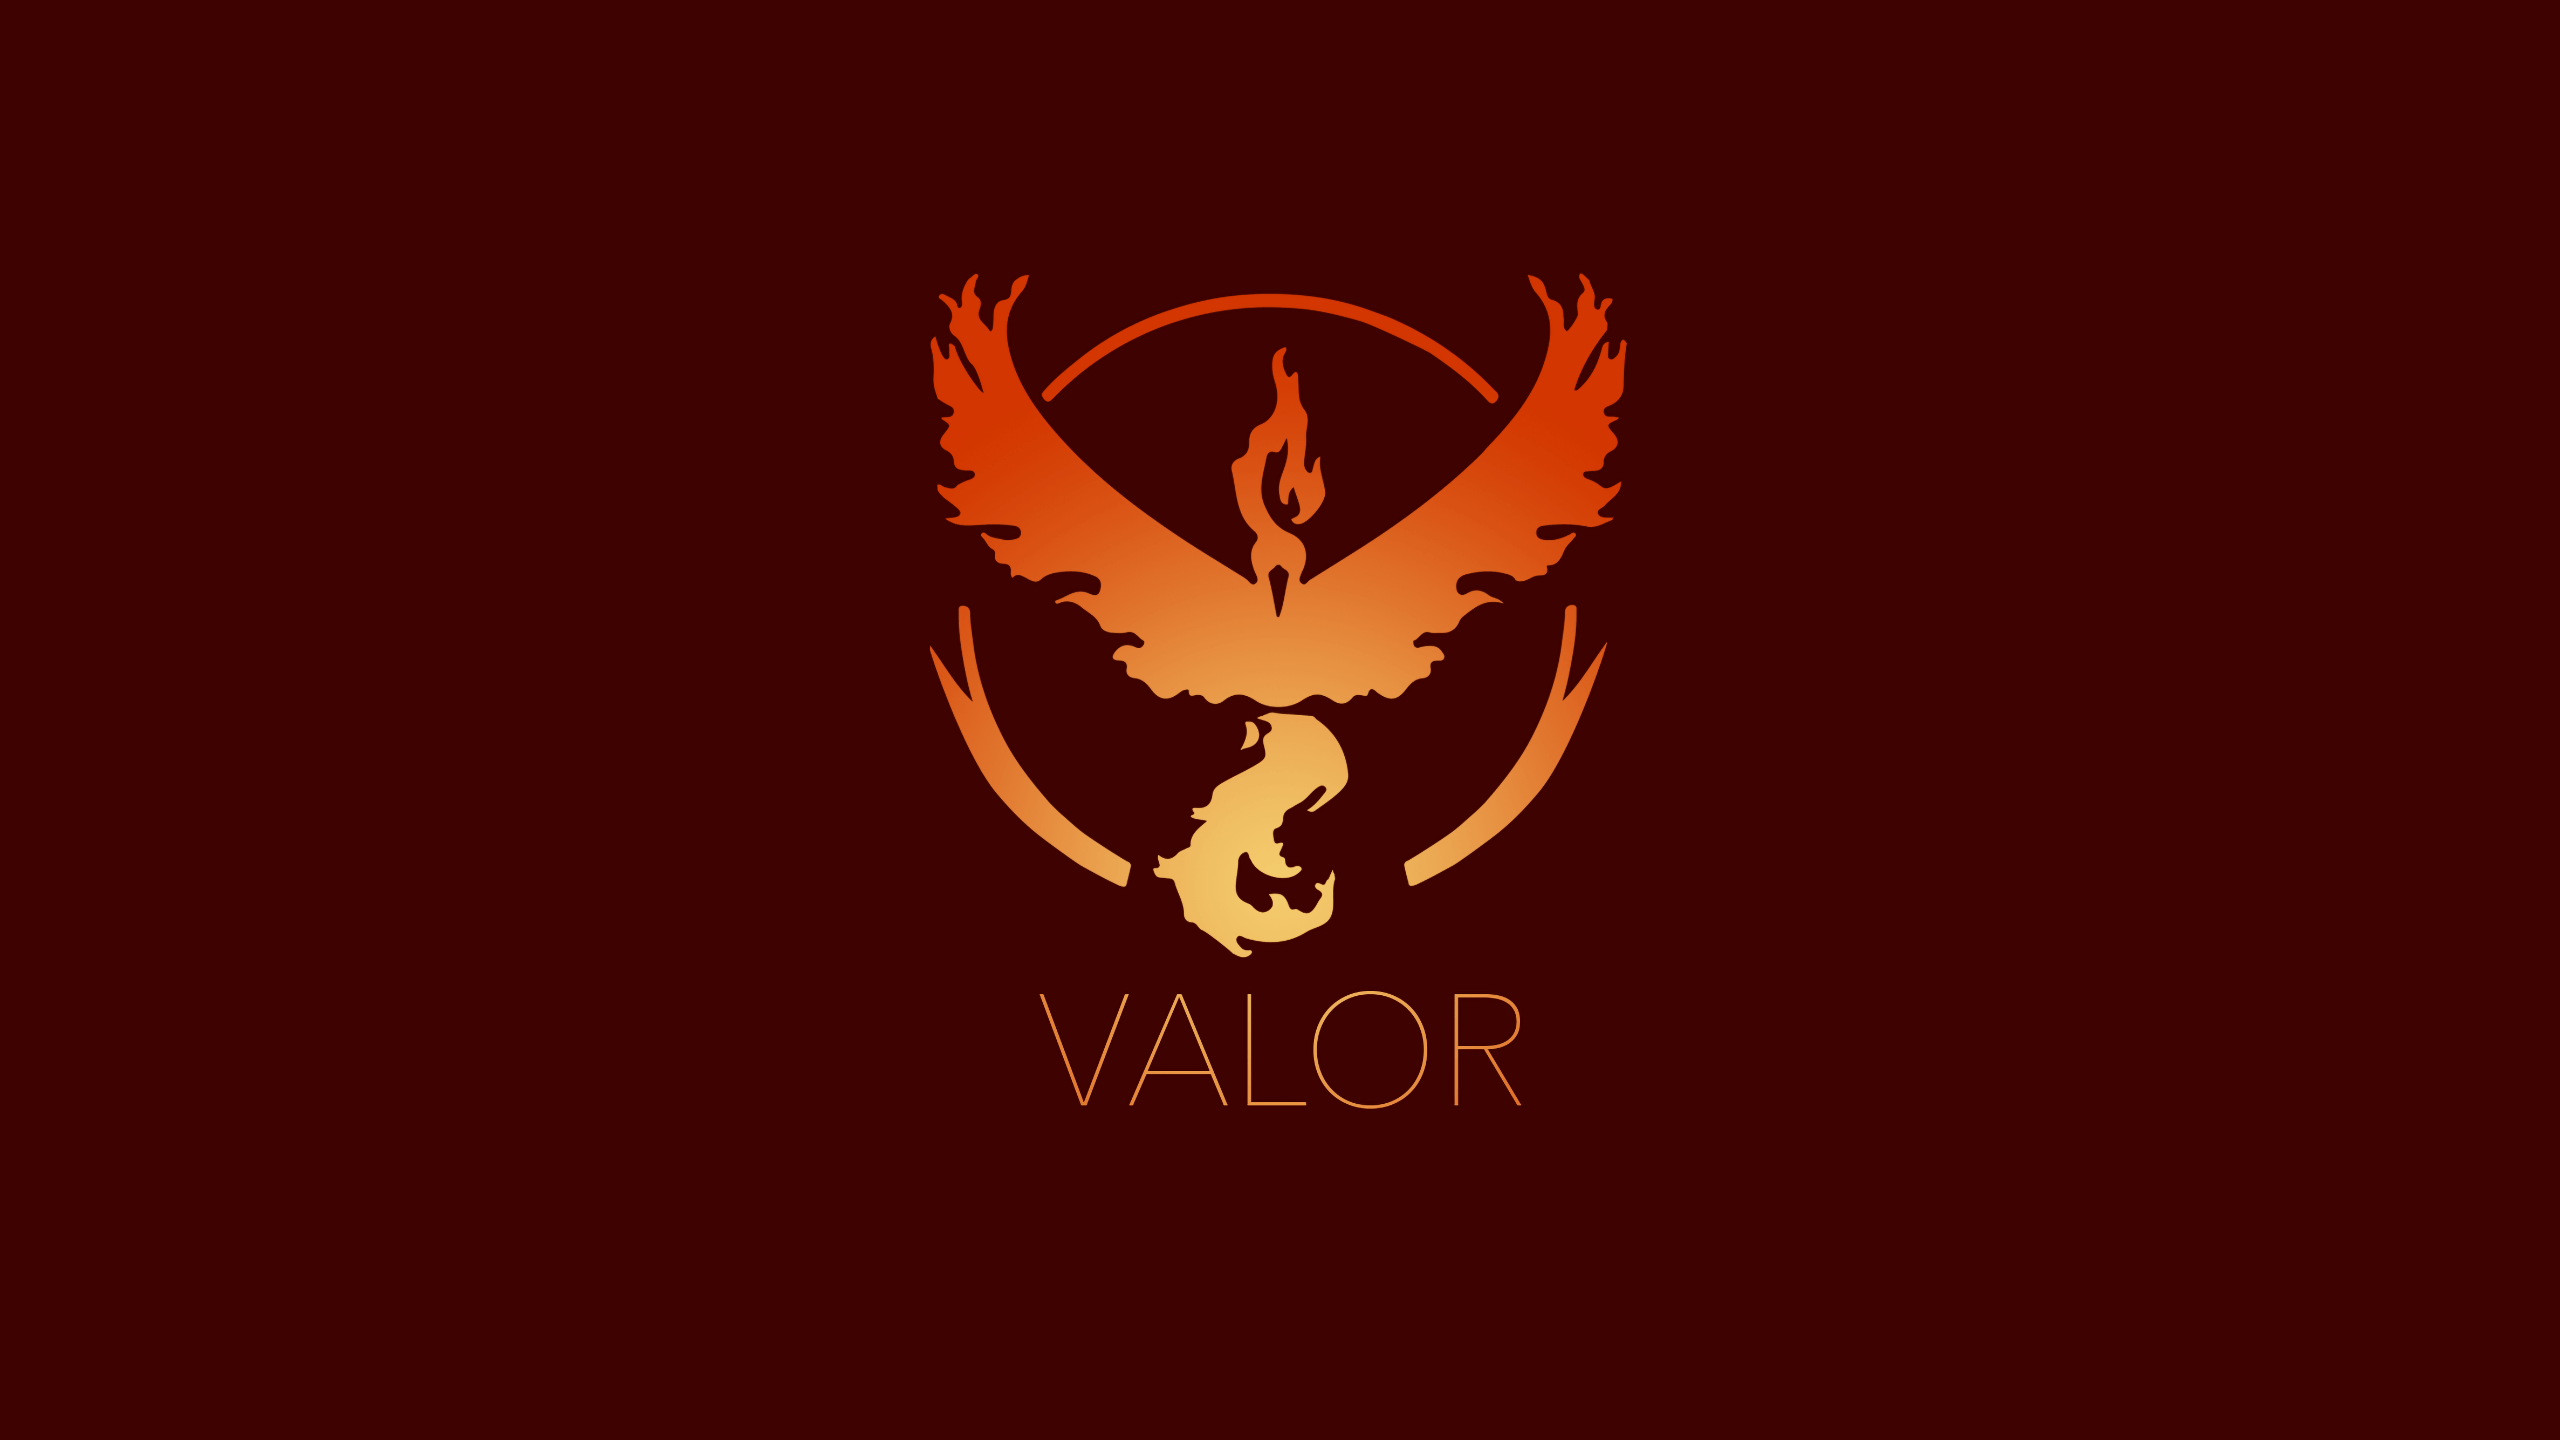 Team Valor HD Wallpaper